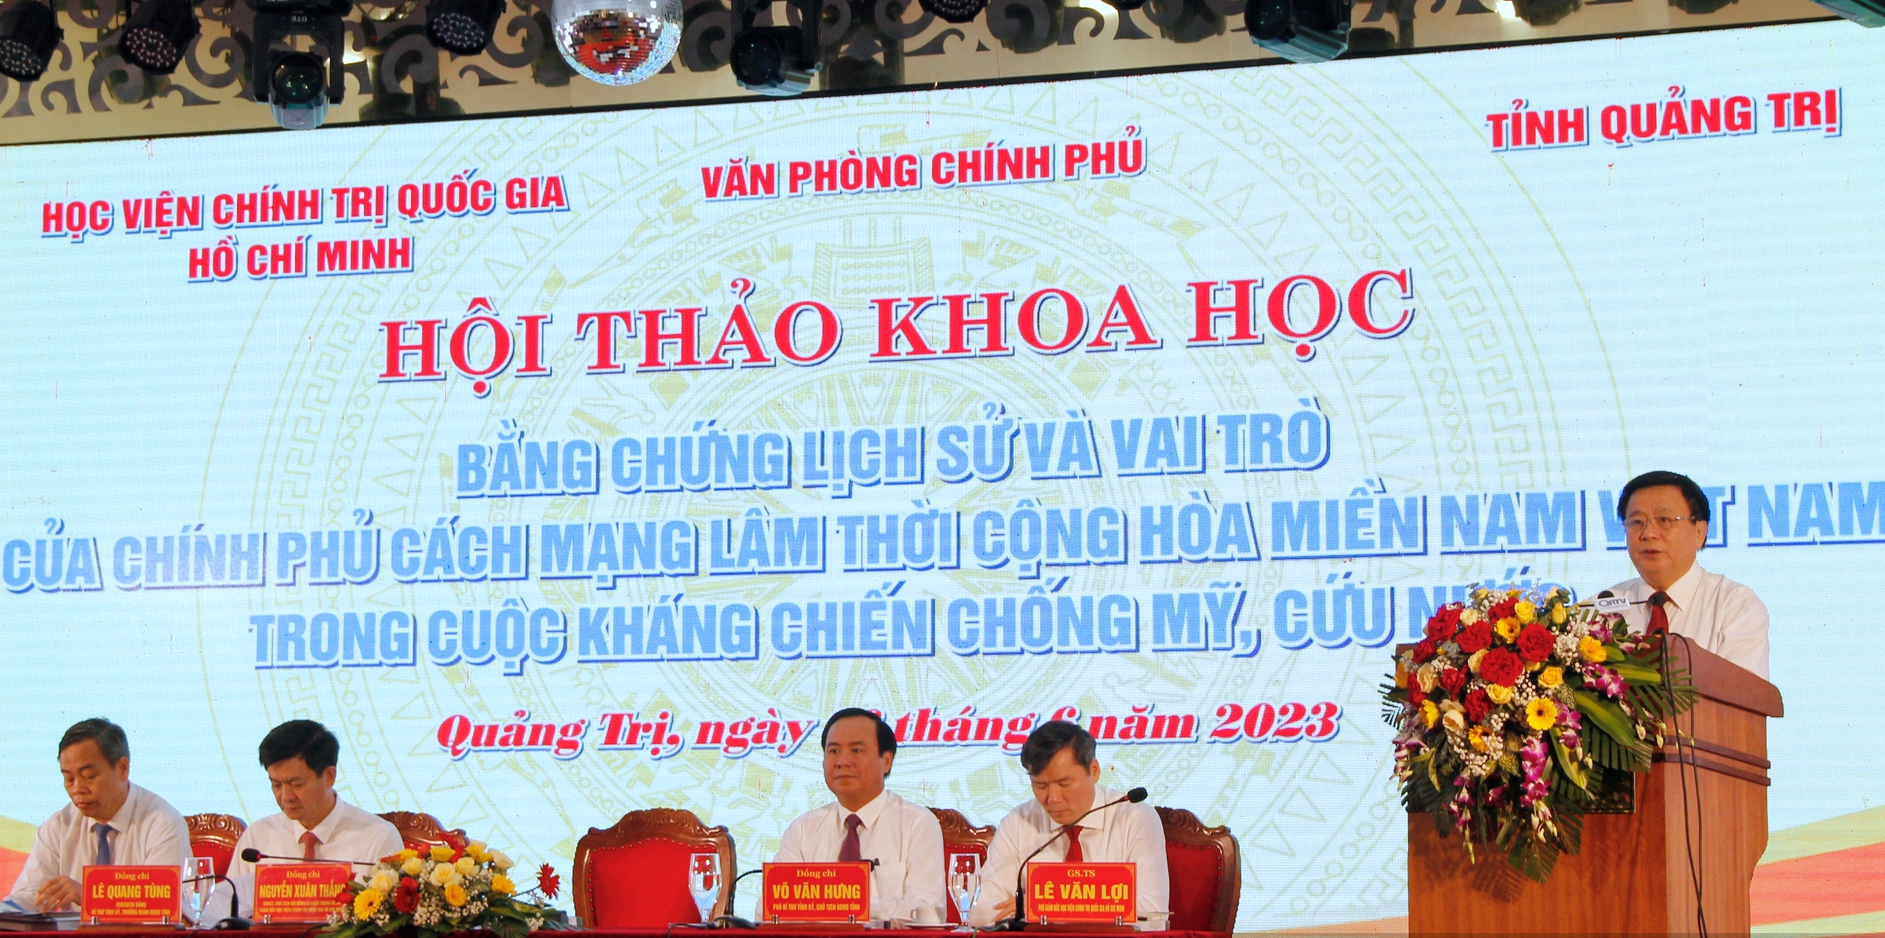 Tái khẳng định vai trò của Chính phủ Cách mạng lâm thời Cộng hòa miền Nam Việt Nam